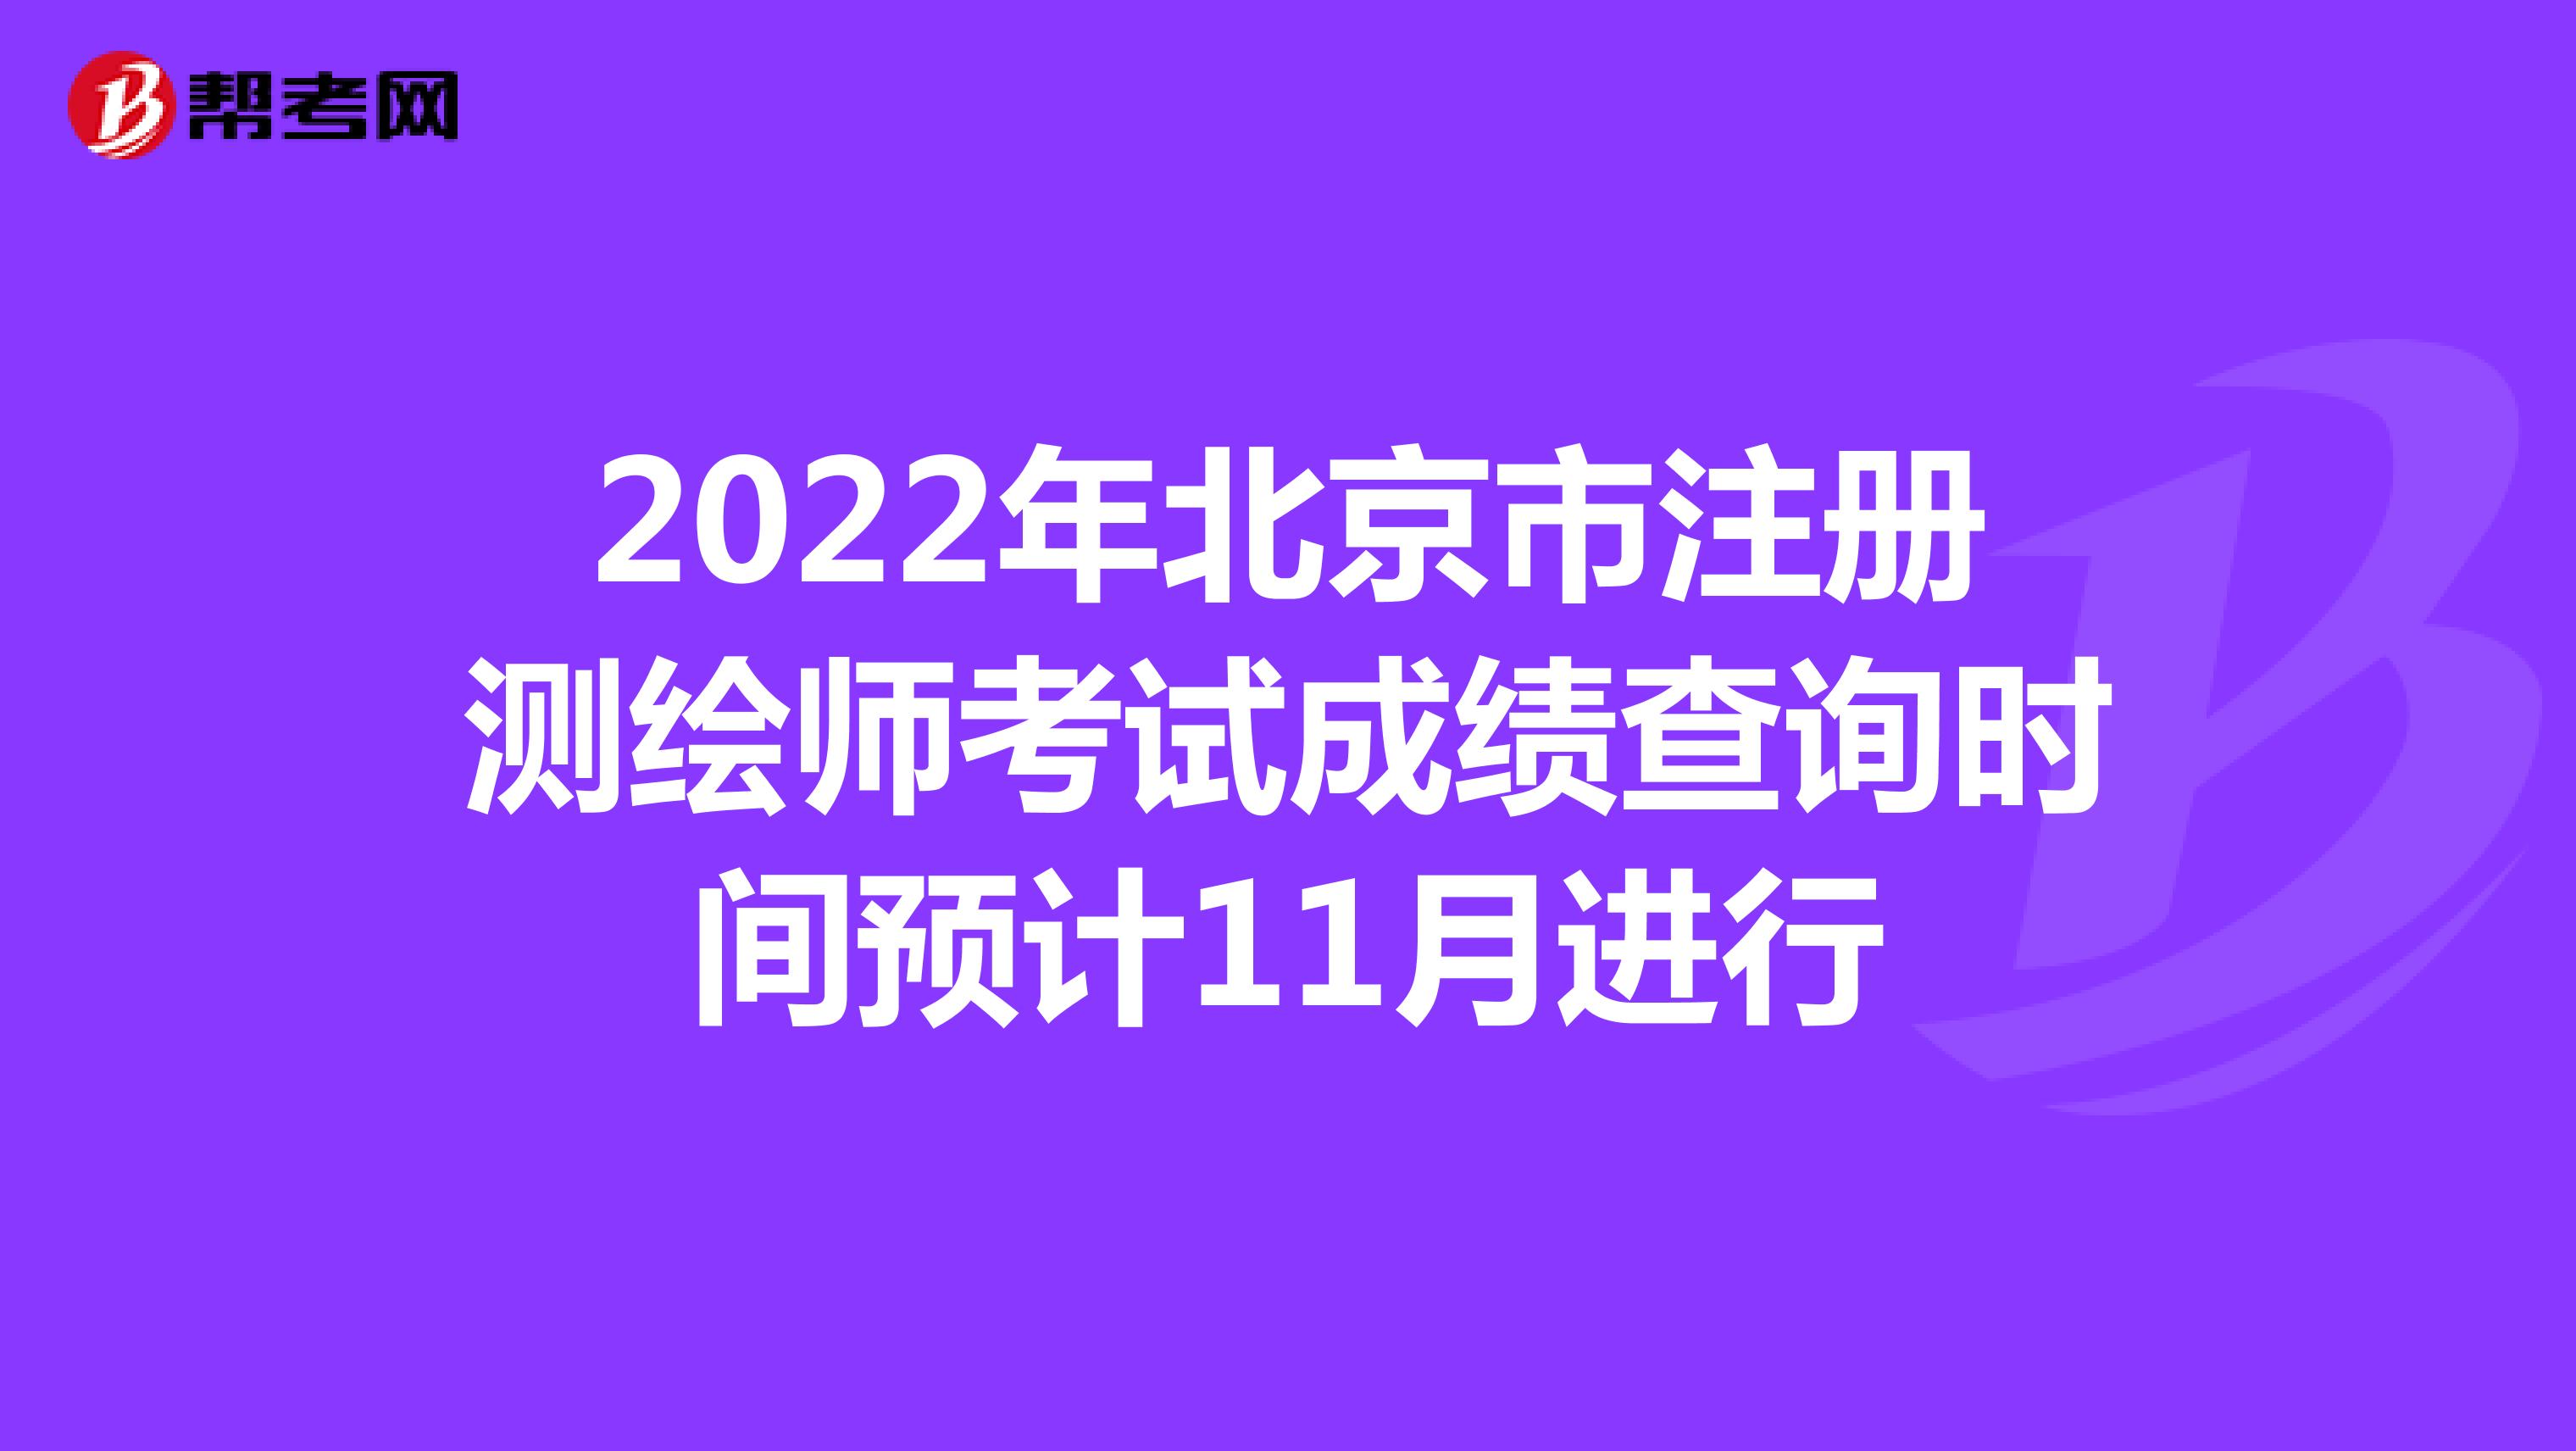 2022年北京市注册测绘师考试成绩查询时间预计11月进行